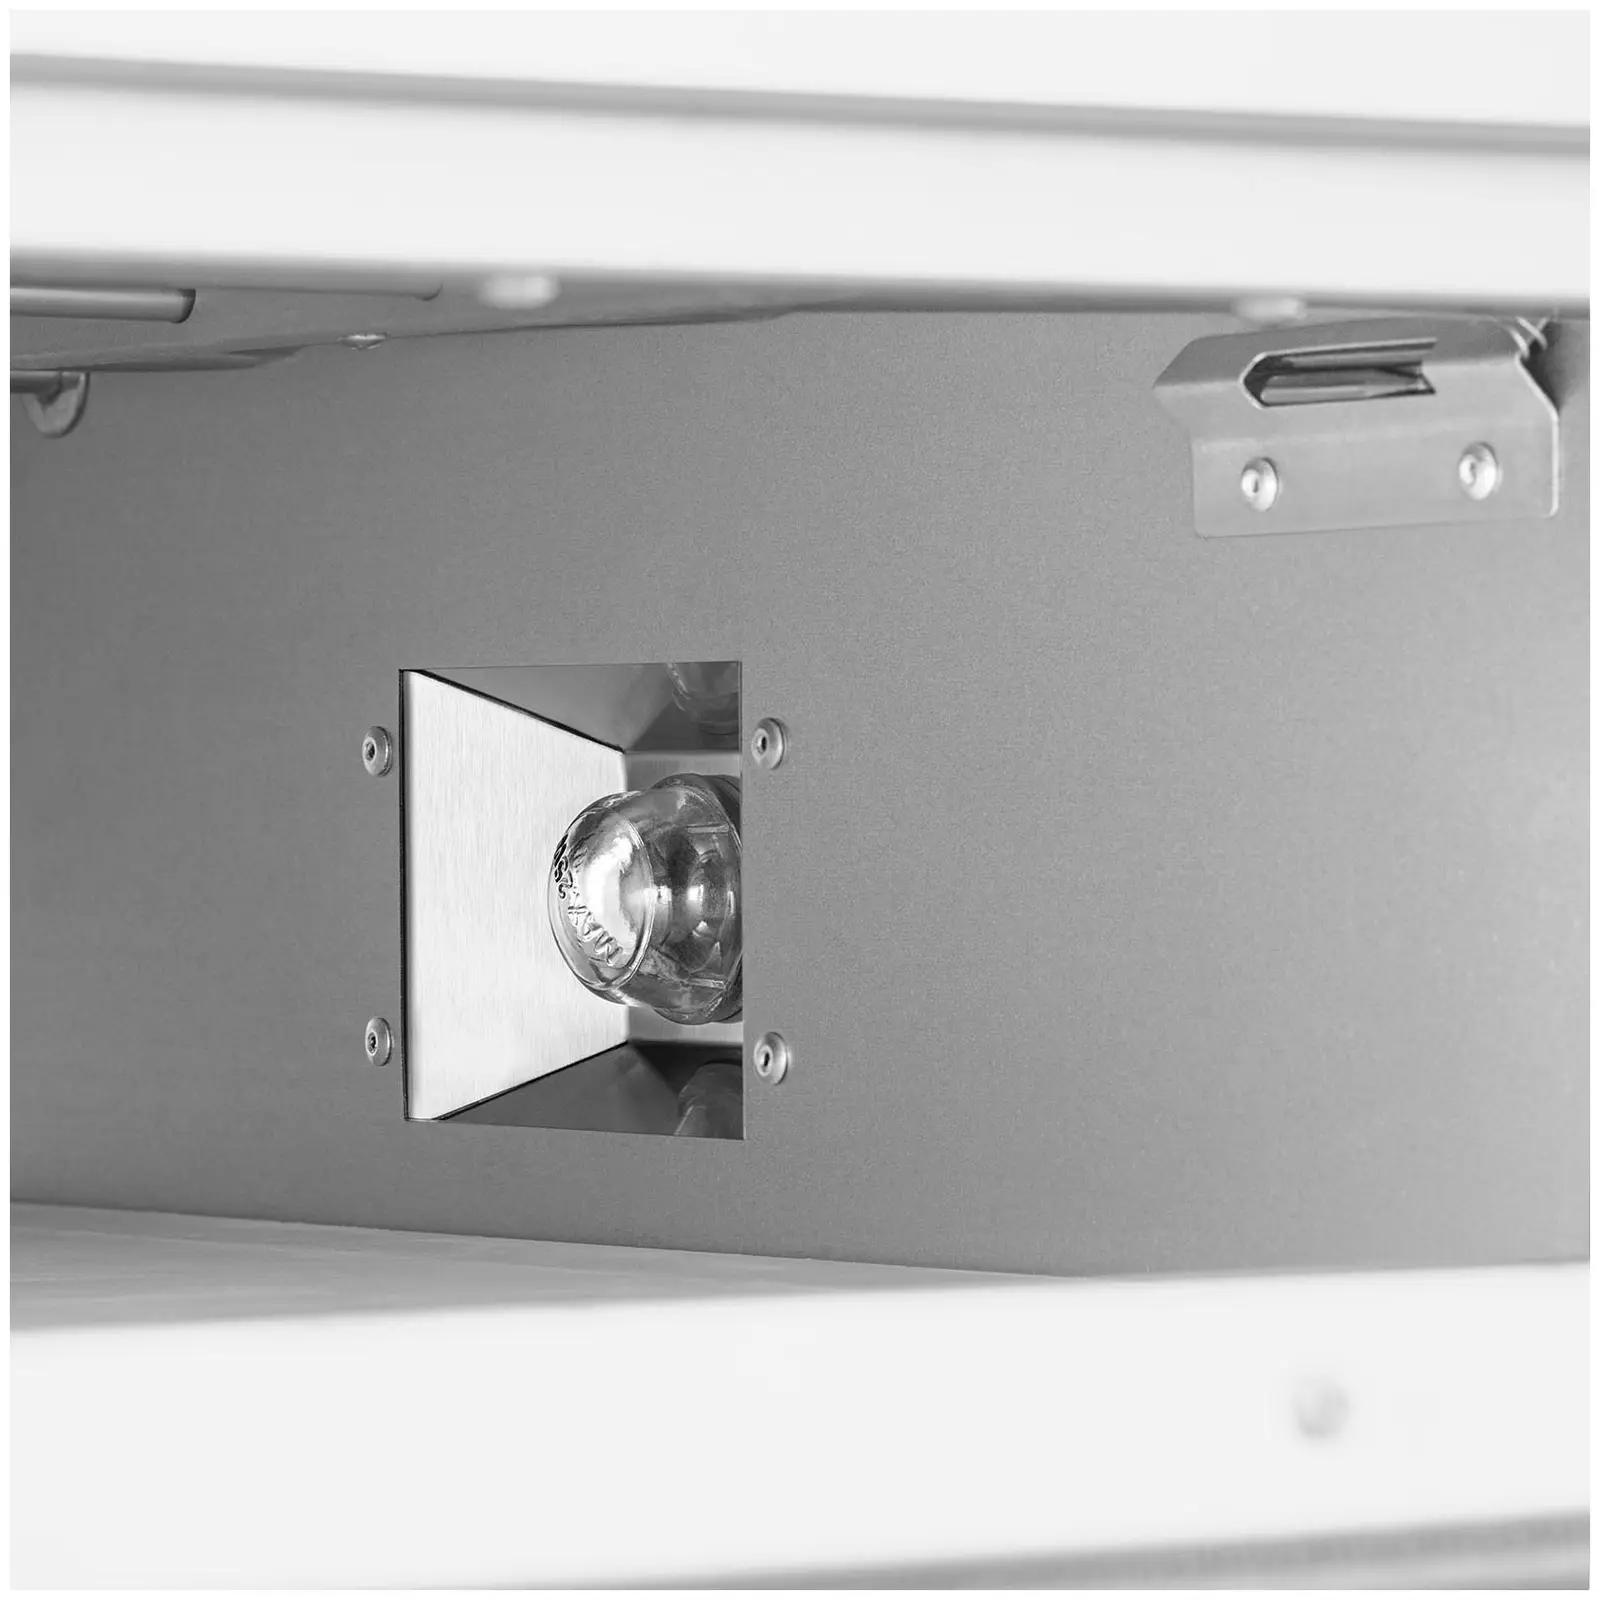 Forno per pizza elettrico professionale - 1 camera - Ø 60 cm - Porta in vetro